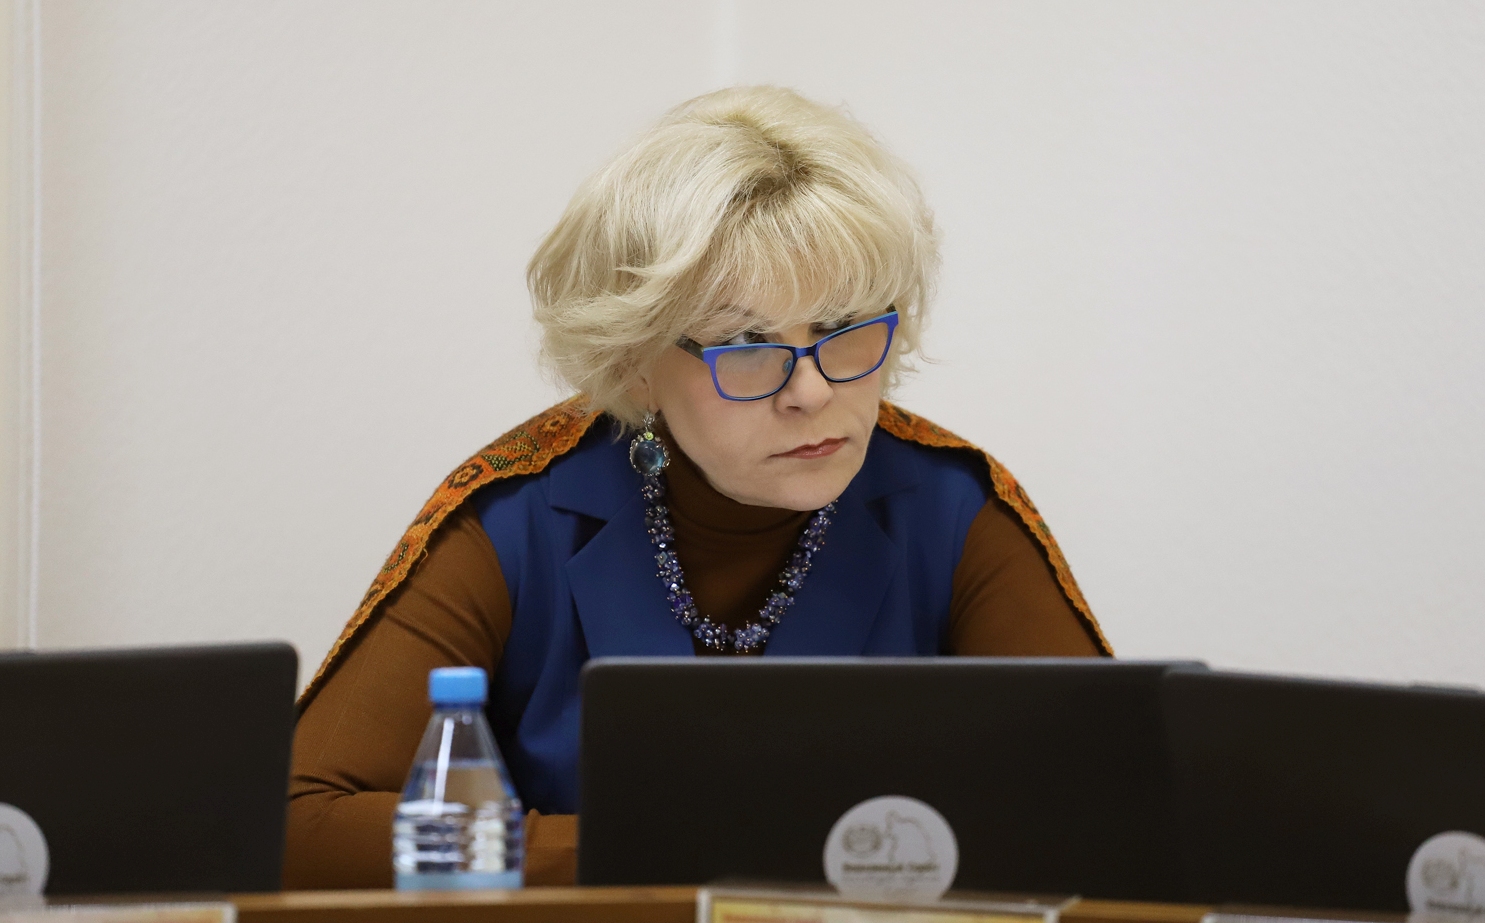 Светлана Могилина. Фото пресс-службы ВС РХ